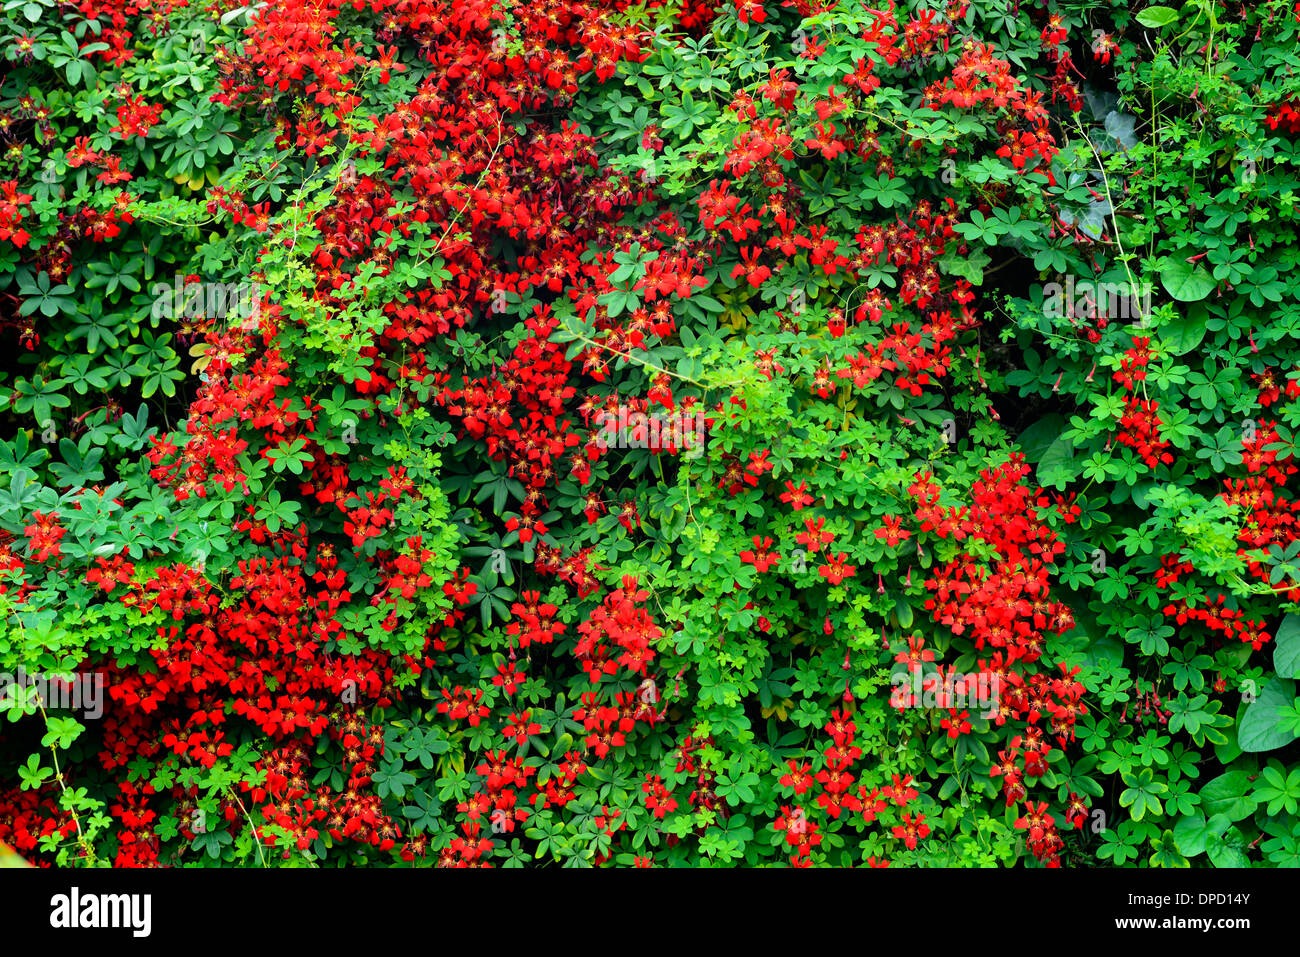 Rot Tropaeolum Speciosum Klettern Pflanzenbau Taxushecke Absicherung Flamme Kapuzinerkresse Blume Blüte für Kletterer Schlingpflanze Stockfoto